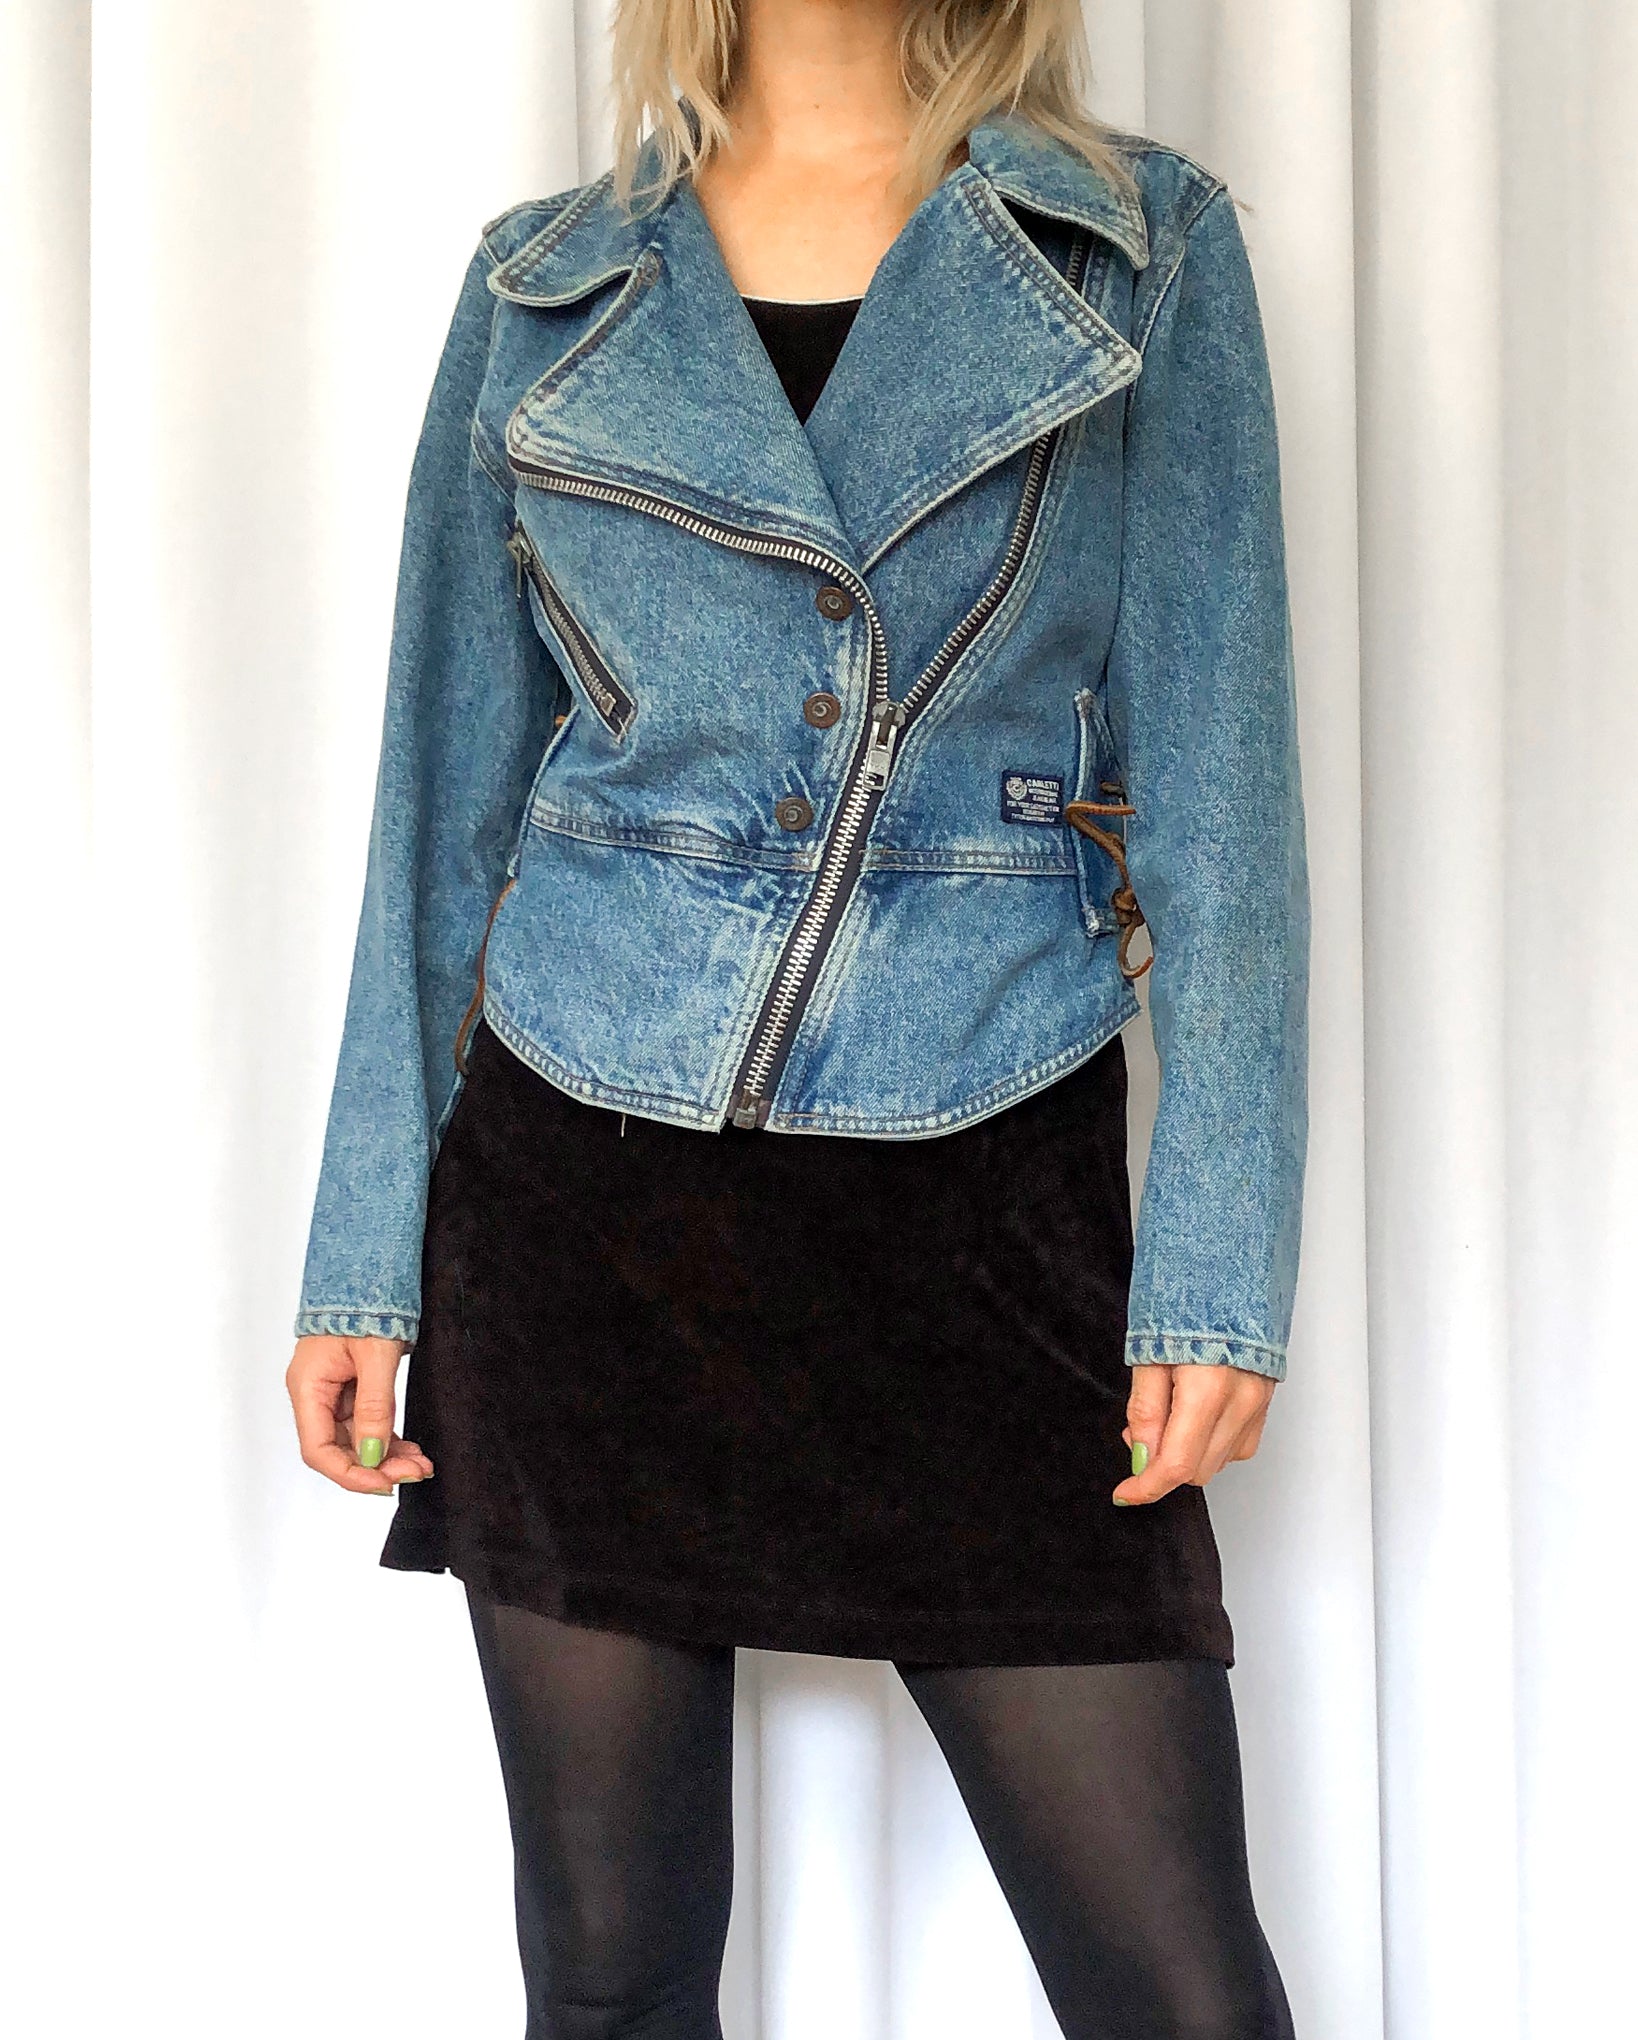 Buy Blue Jackets & Coats for Women by BELLISKEY Online | Ajio.com